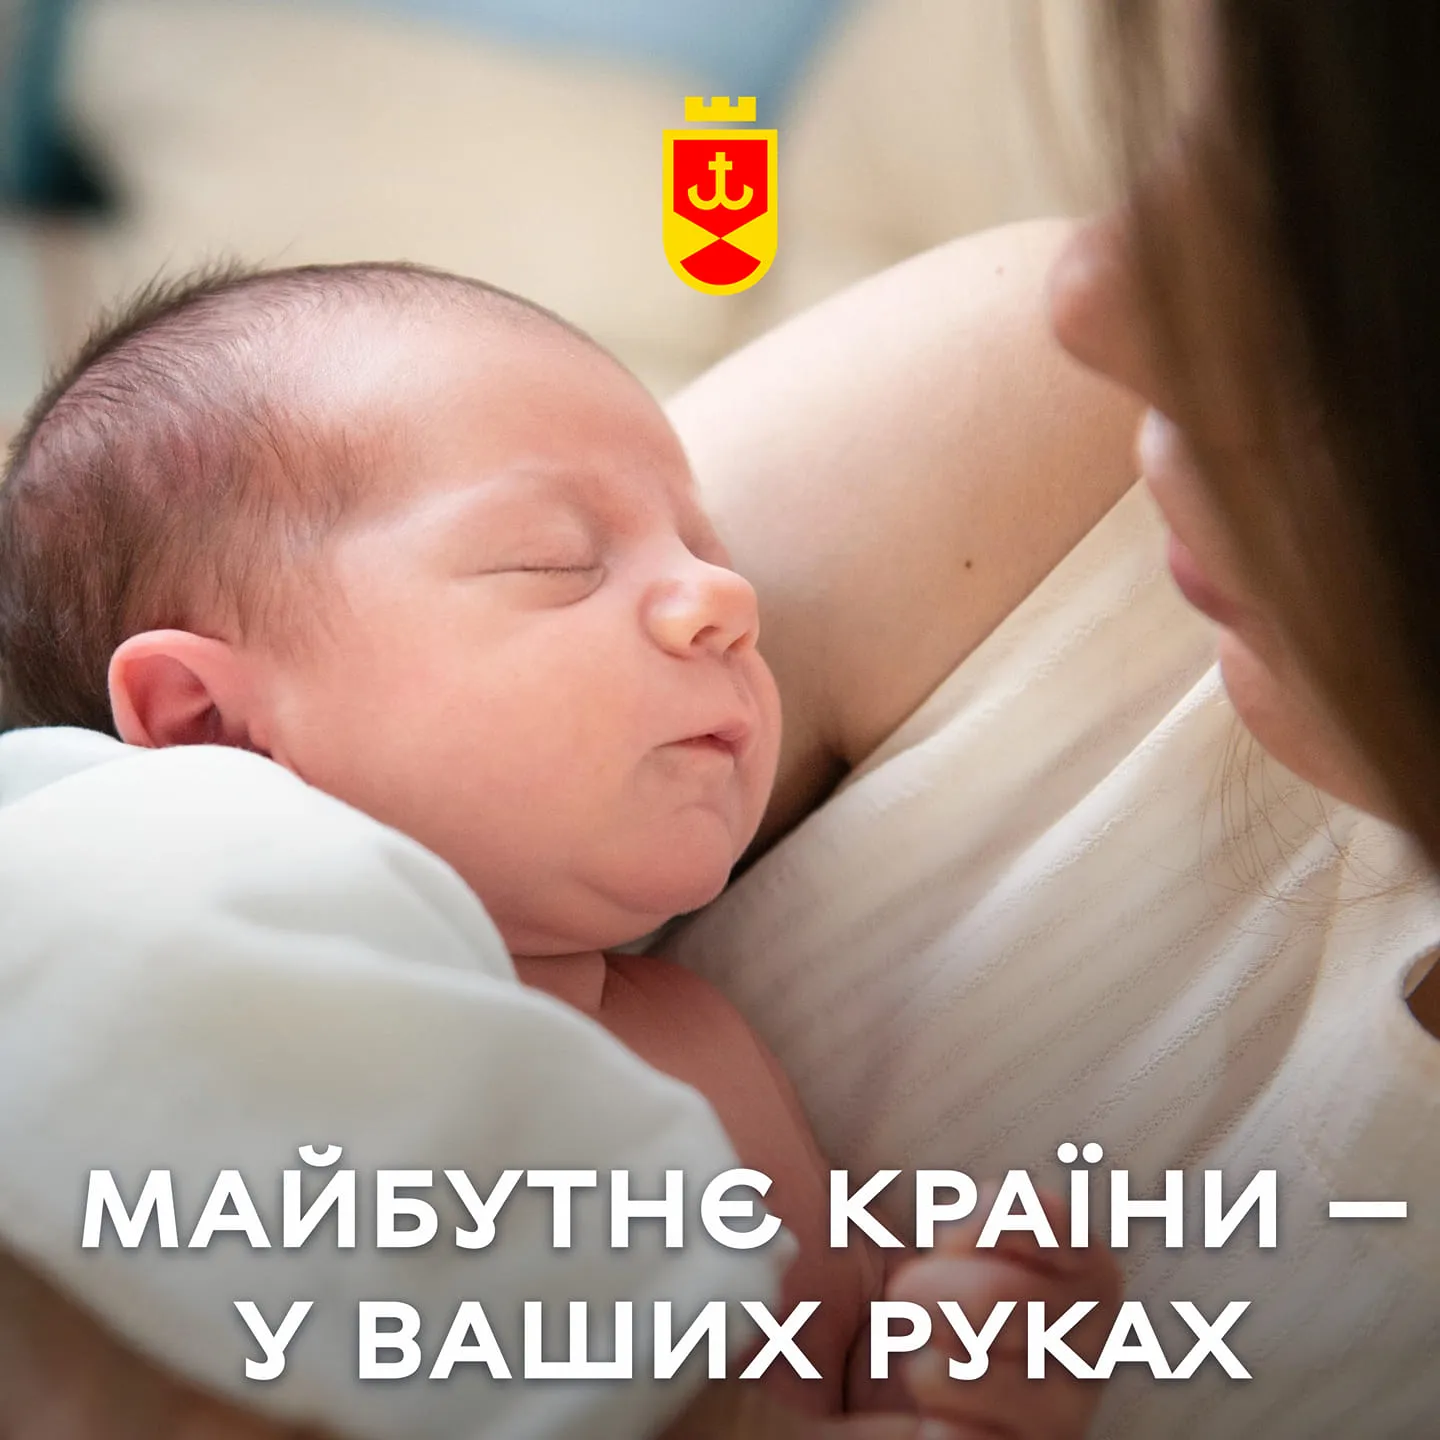 У ваших руках – наше майбутнє: Сергій Моргунов звернувся до жінок у День матері Про це повідомляє Вінницька міська рада